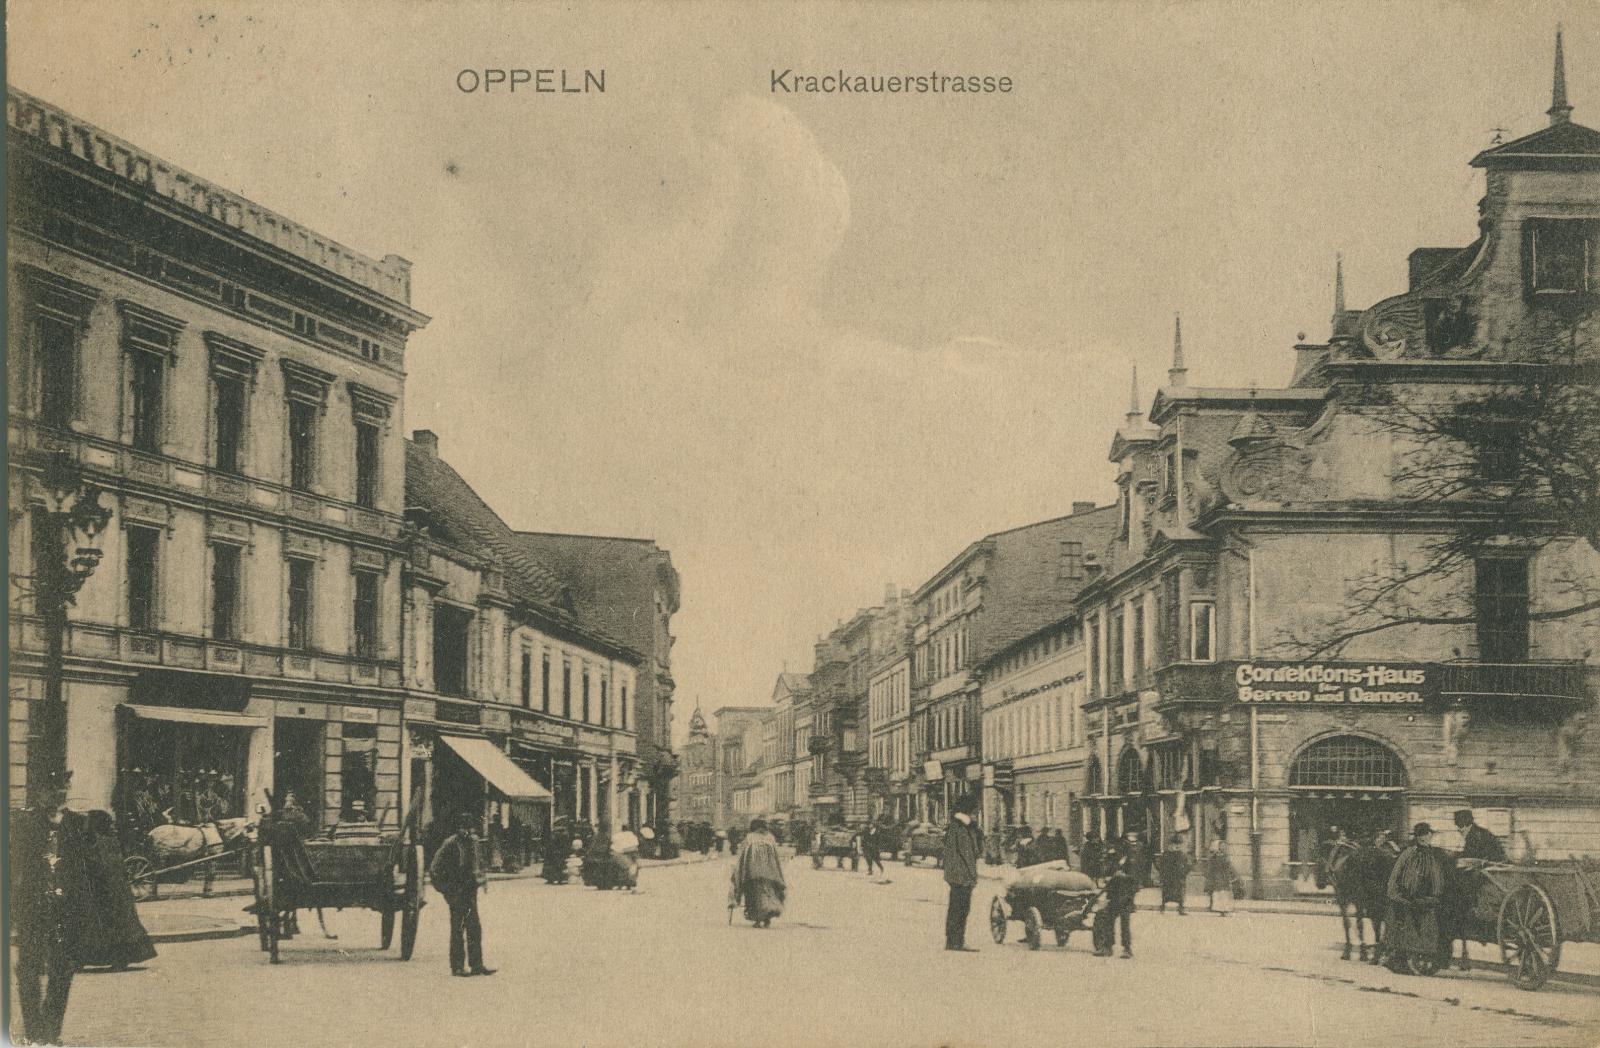 Zabudowa ulicy Krakowskiej, widok w stronę dworca, karta pocztowa, wyd. Rheinische Kunstverlagsanstalt, Wiesbaden, ok. 1909 r.